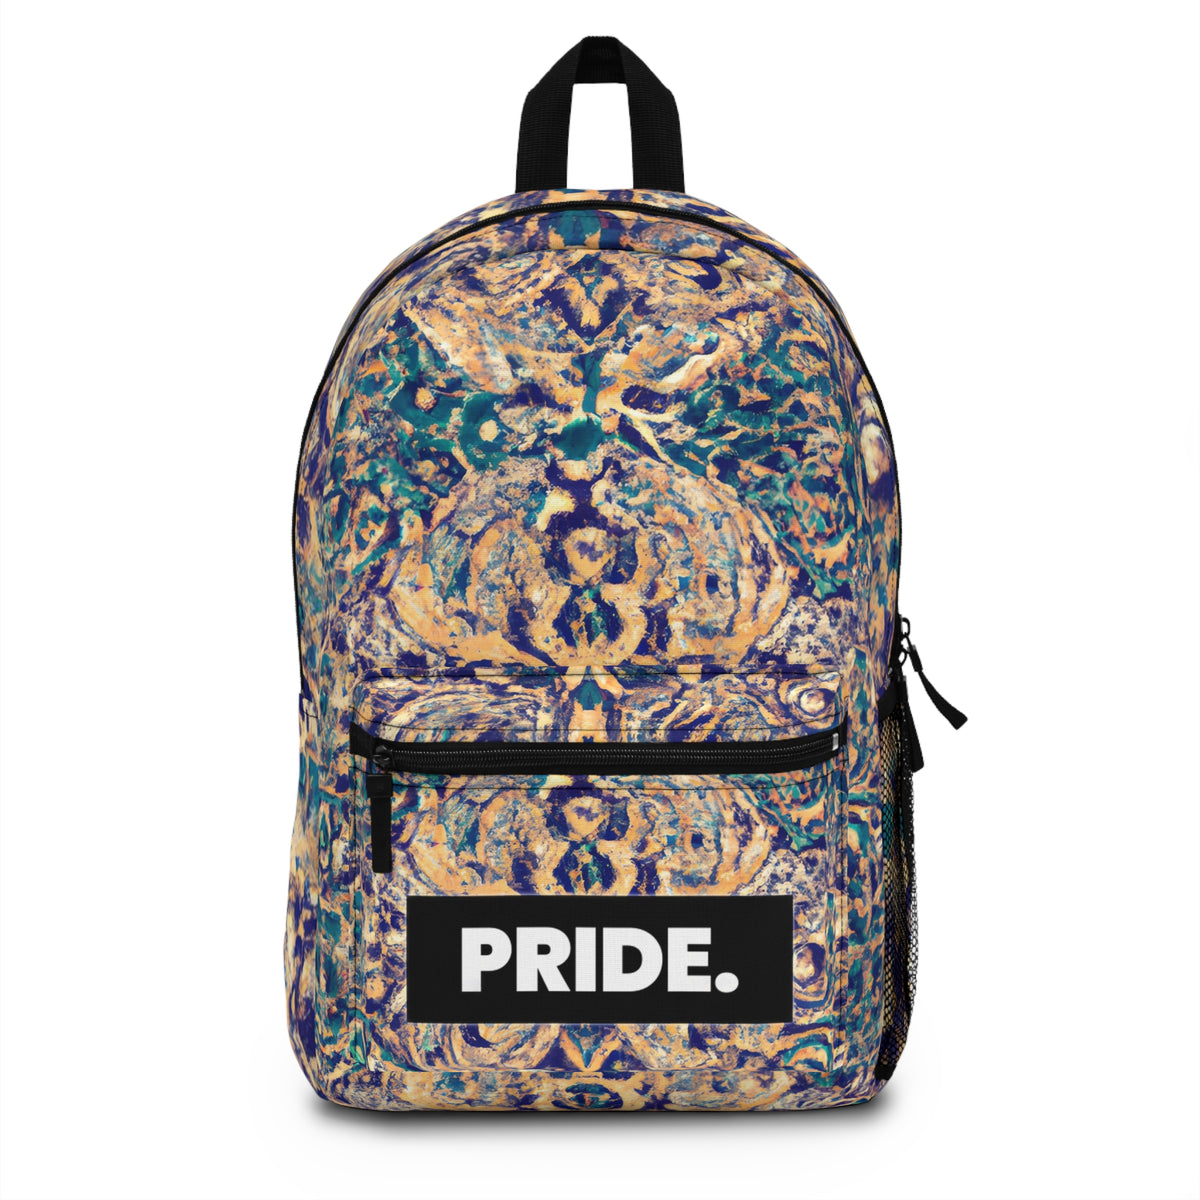 RavTheRoaring20s - Gay Pride Backpack